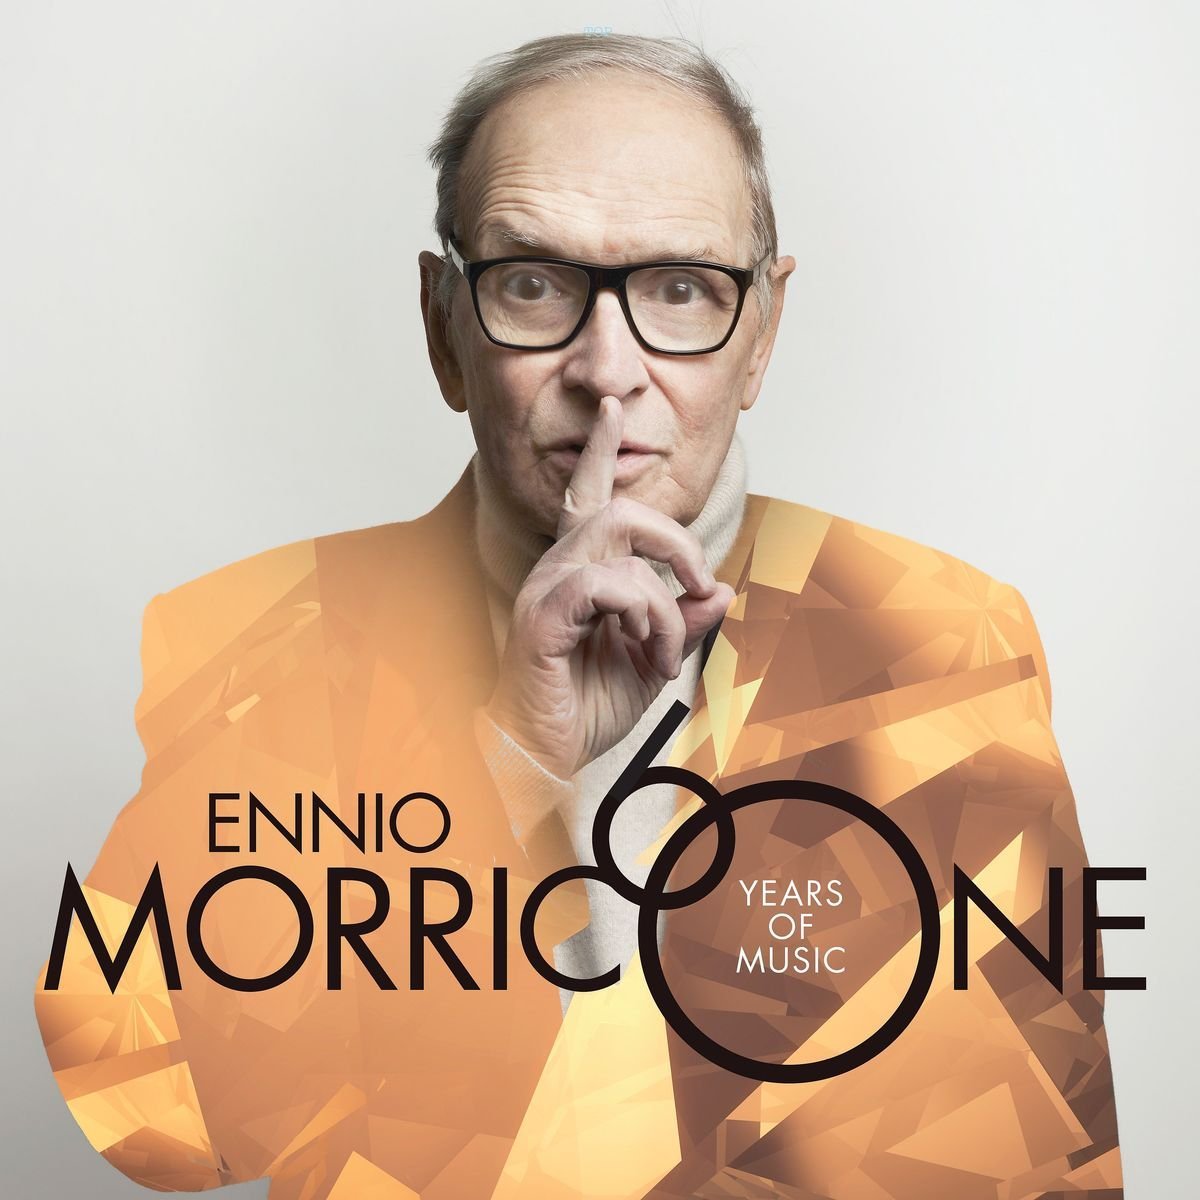 Audio Cd Ennio Morricone - 60 Years Of Music (Deluxe) (2 Cd) NUOVO SIGILLATO, EDIZIONE DEL 15/11/2016 SUBITO DISPONIBILE